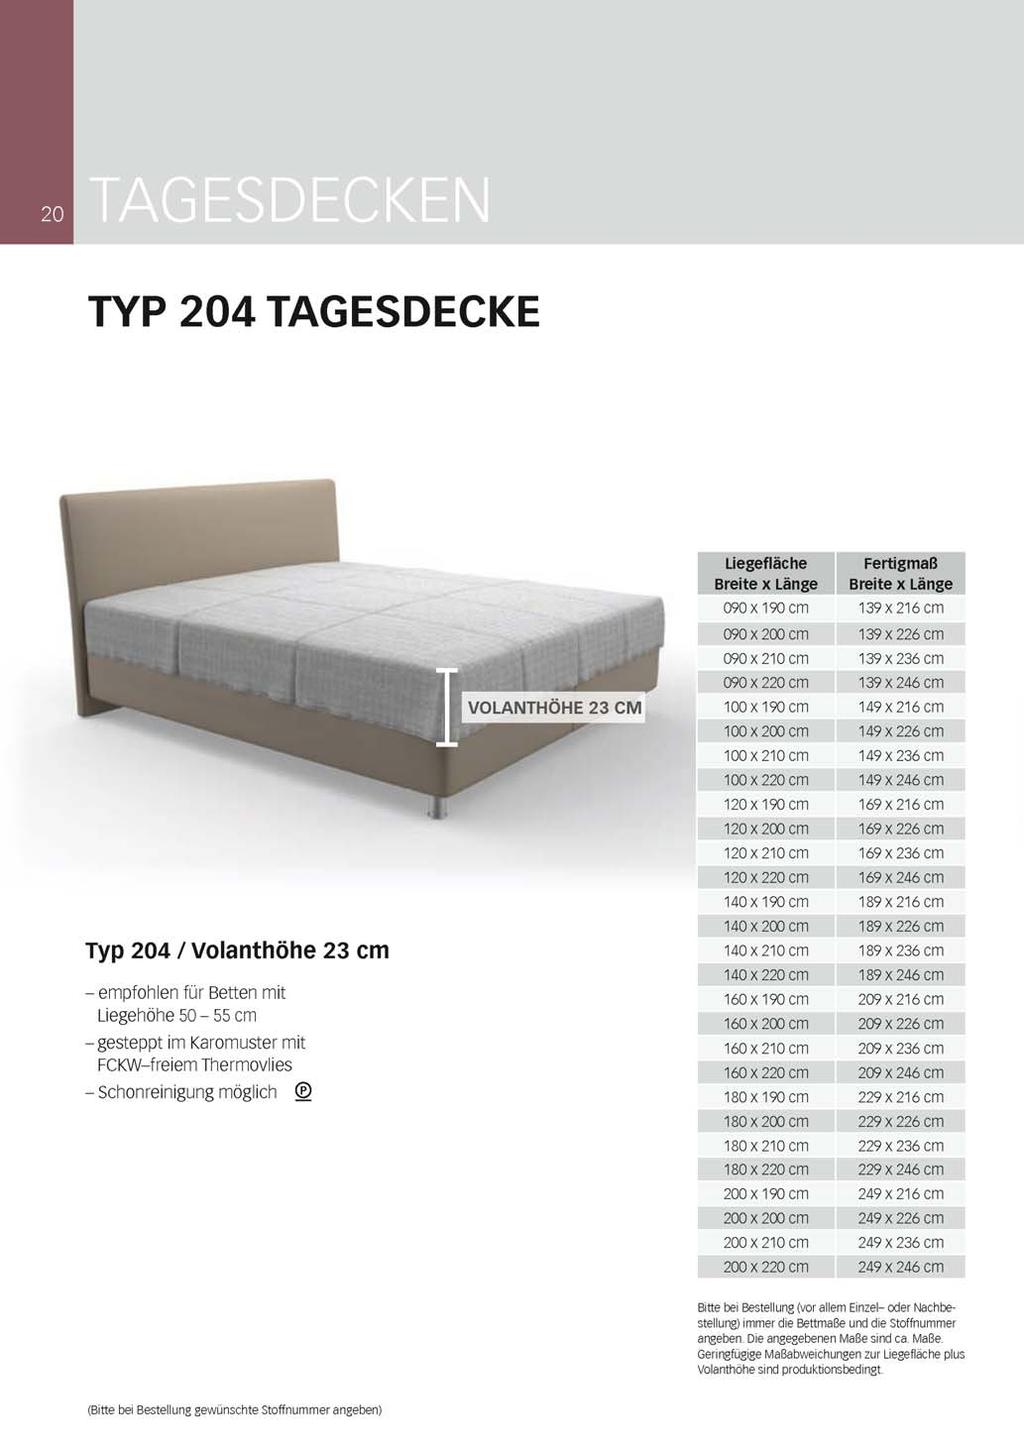 Seite 38 von 54 TYP 204 TAGESDECKE Typ 204 / volanthöhe 23 cm - empfohlen für Betten mit Liegehöhe so - 55 cm - gesteppt im Karomuster mit FCKW-freiem Thermovlies - Schonreinigung möglich Uegefläche